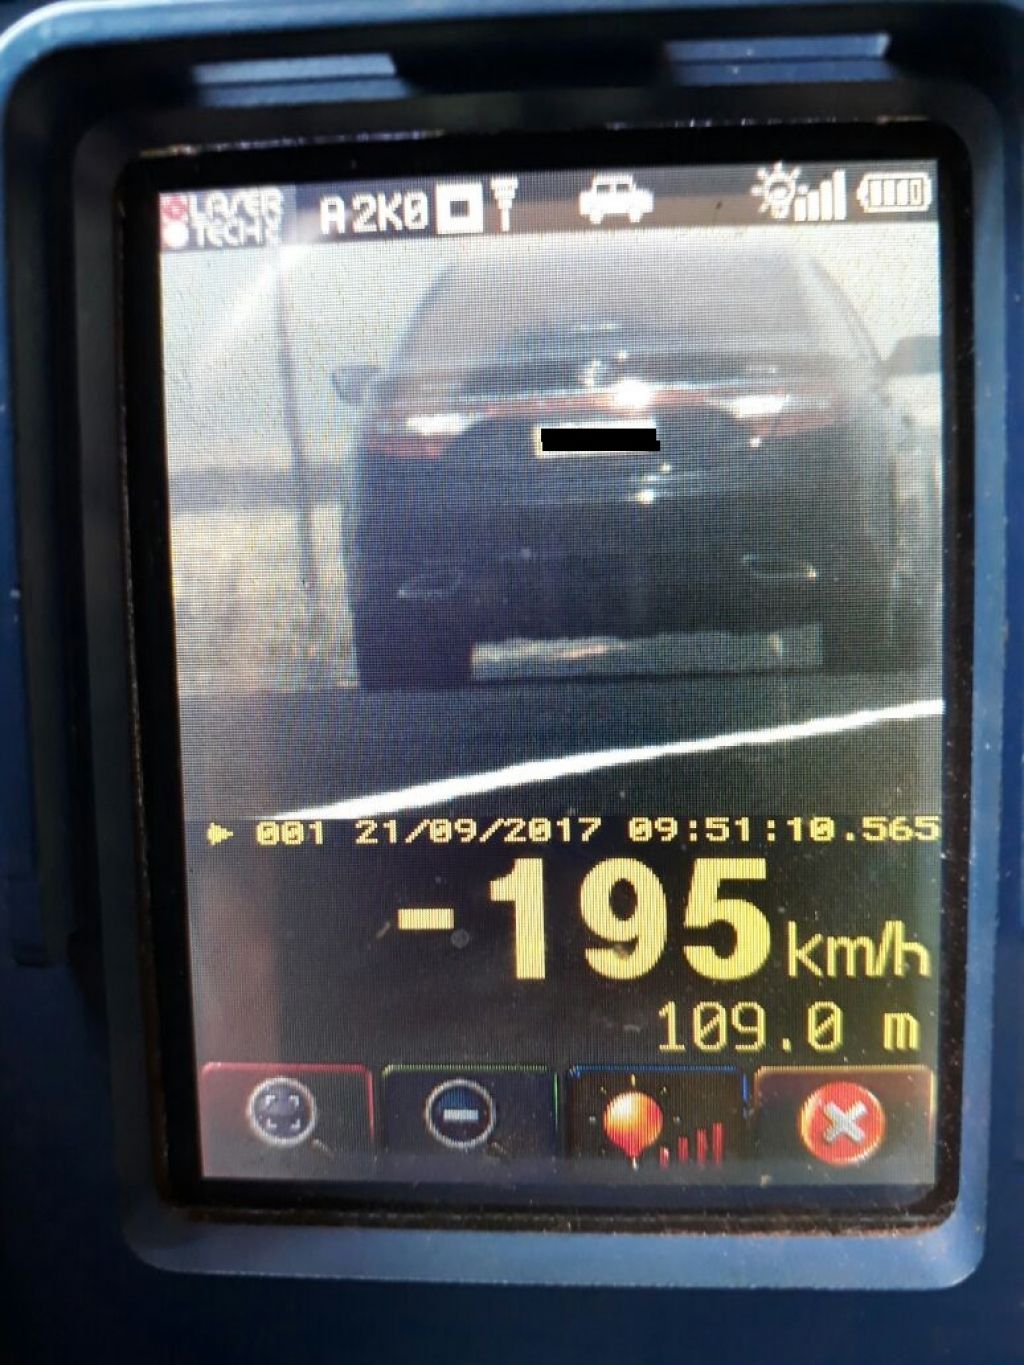 Flagrante feito ontem mostra carro a quase 200 quilômetros por hora na BR-463 (Foto: Reprodução/PRF)